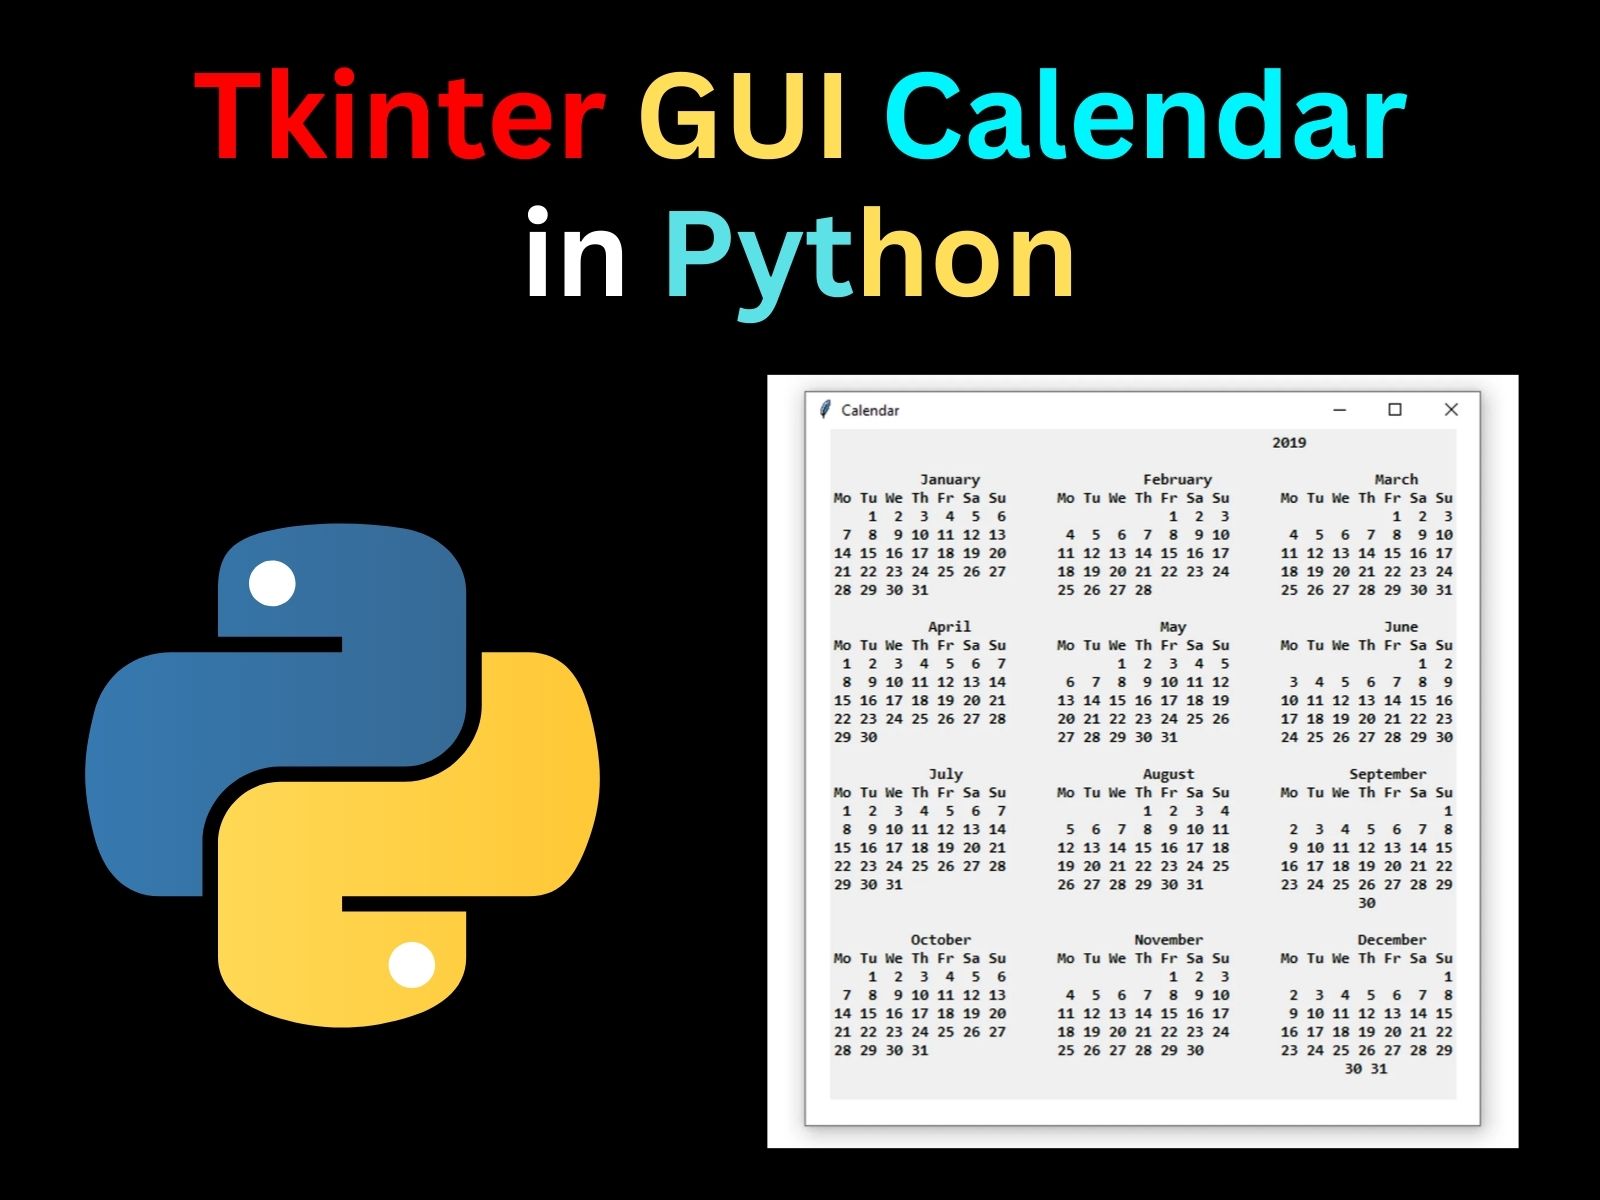 create-calendar-using-python-gui-calendar-tkinter-my-xxx-hot-girl